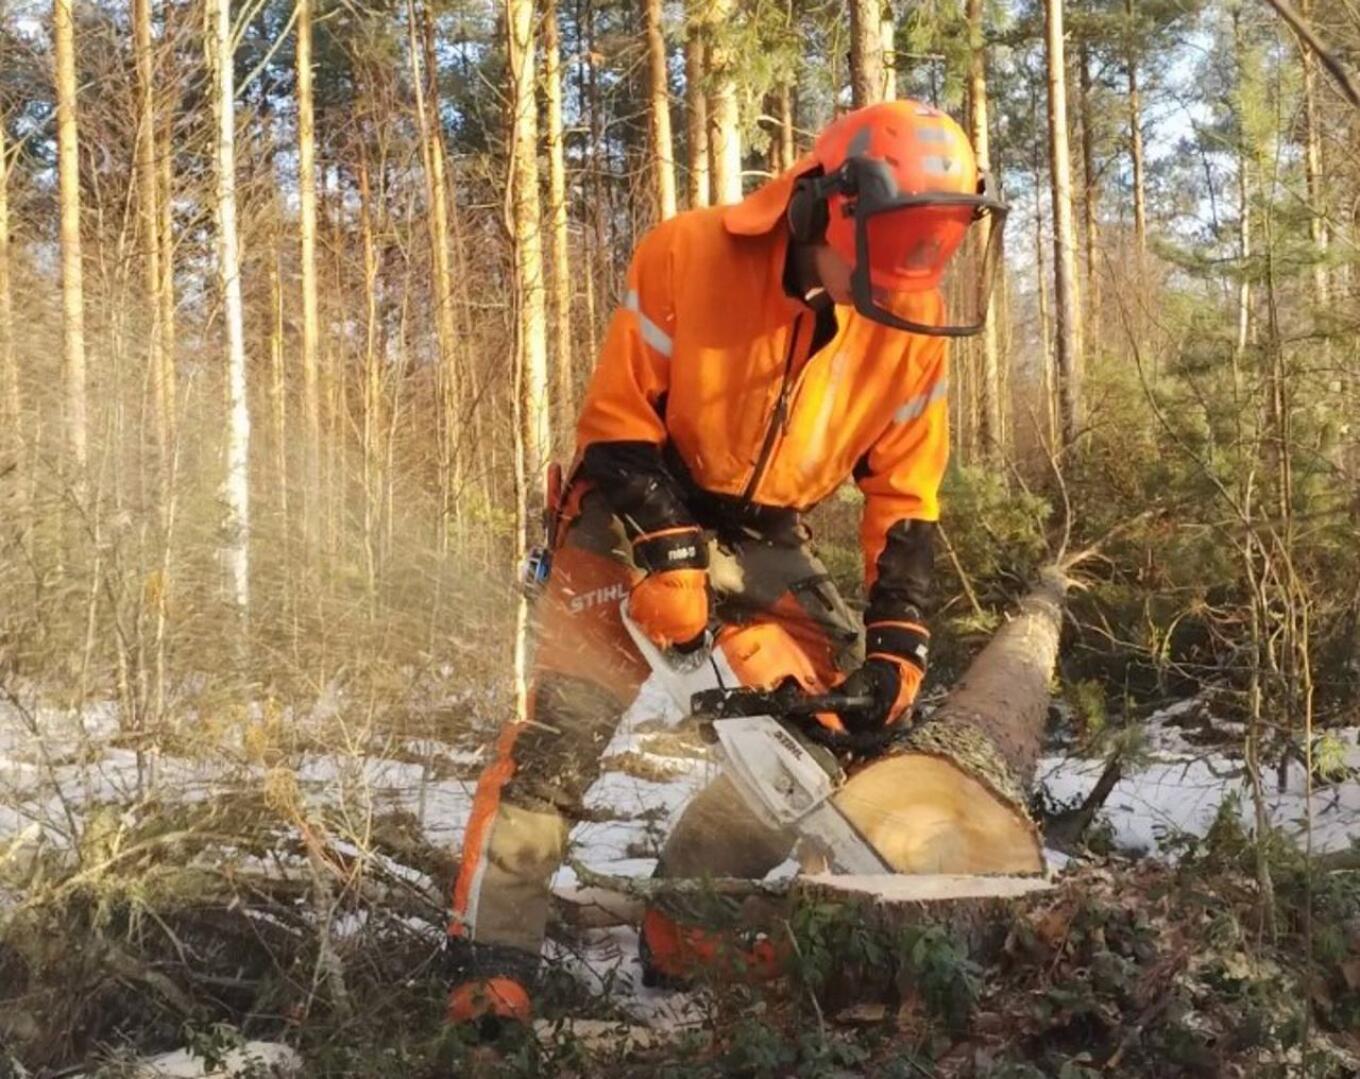 Kärsämäkinen Markus Puolimatka halusi metsuriksi jo lapsena: 